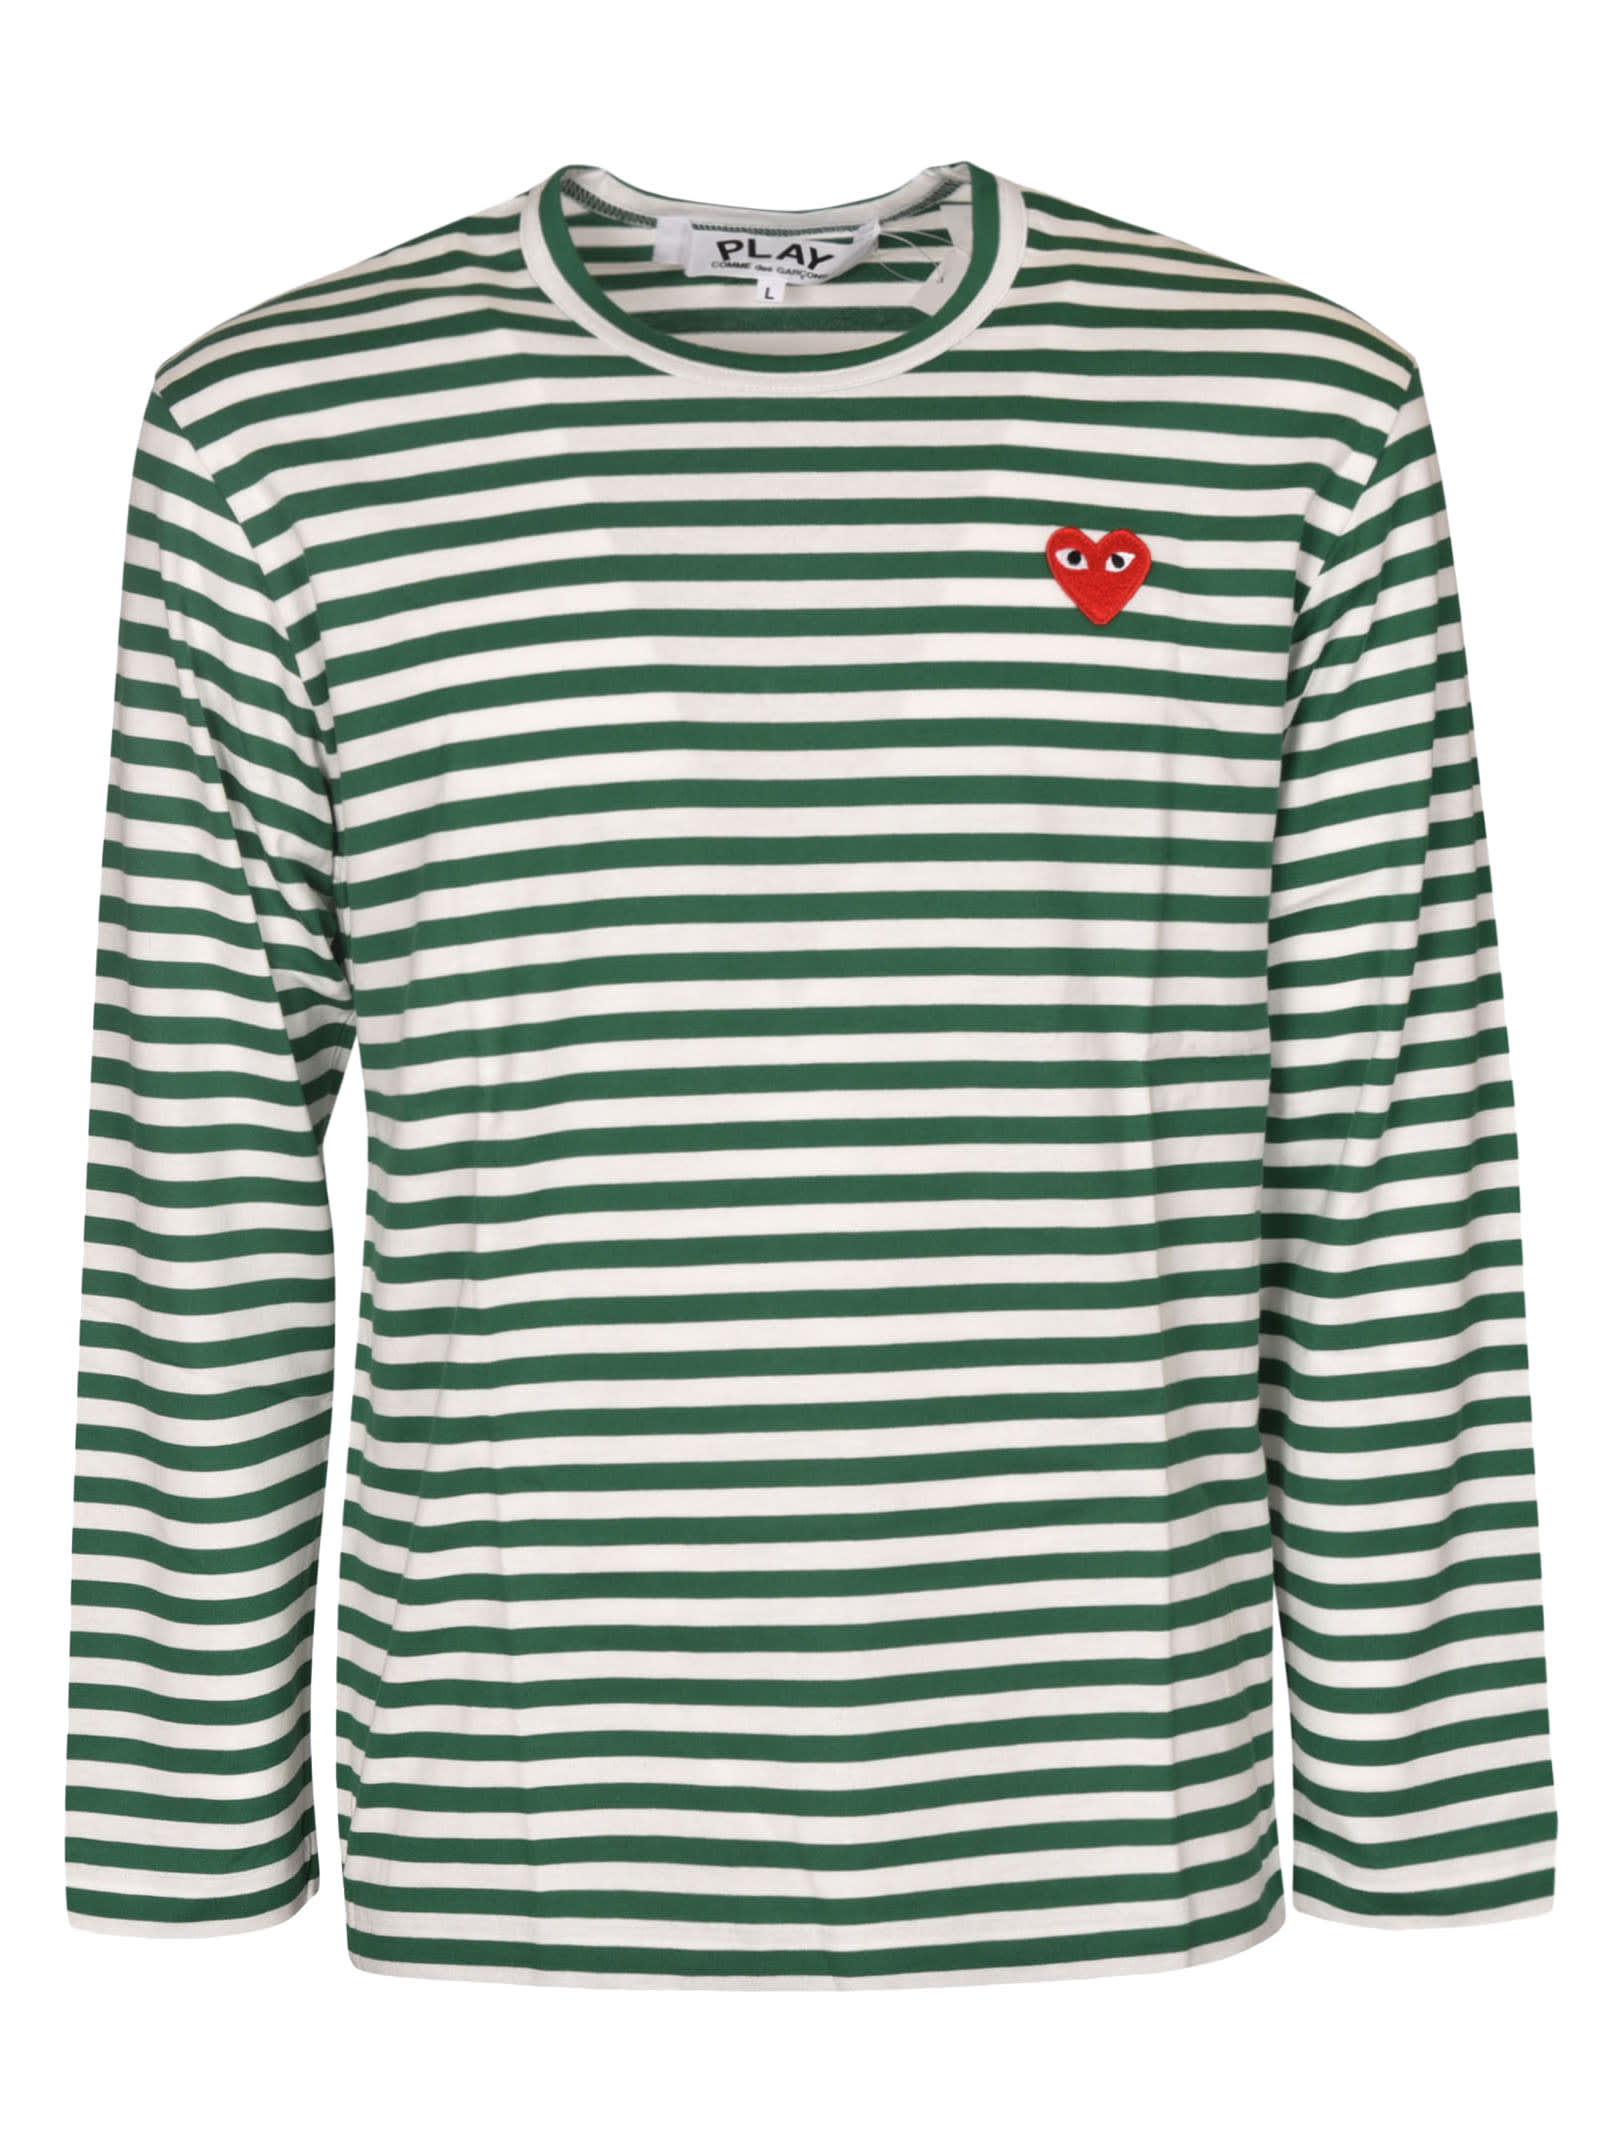 Comme des Garçons Play Stripe Print Logo Heart Patch Long-sleeved T-shirt